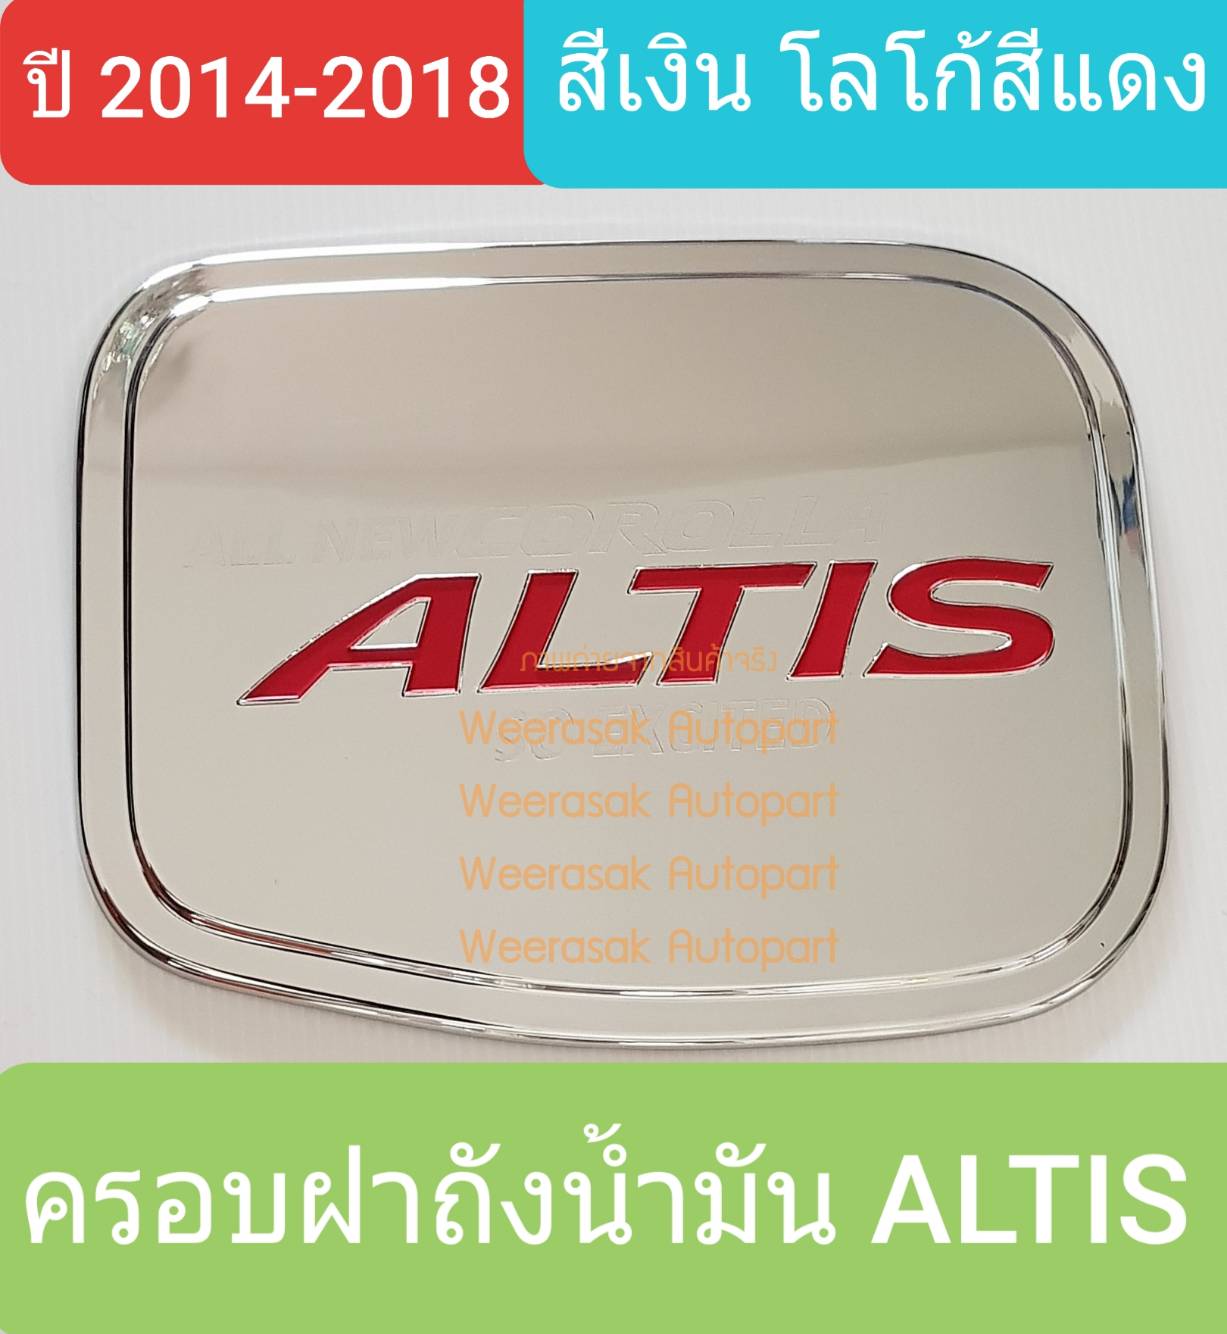 ครอบฝาถังน้ำมัน Toyota Altis โตโยต้า อัลติส ปี 2014-2018 (สีเงินโลโก้สีแดง) (ใช้เทปกาว 3M)